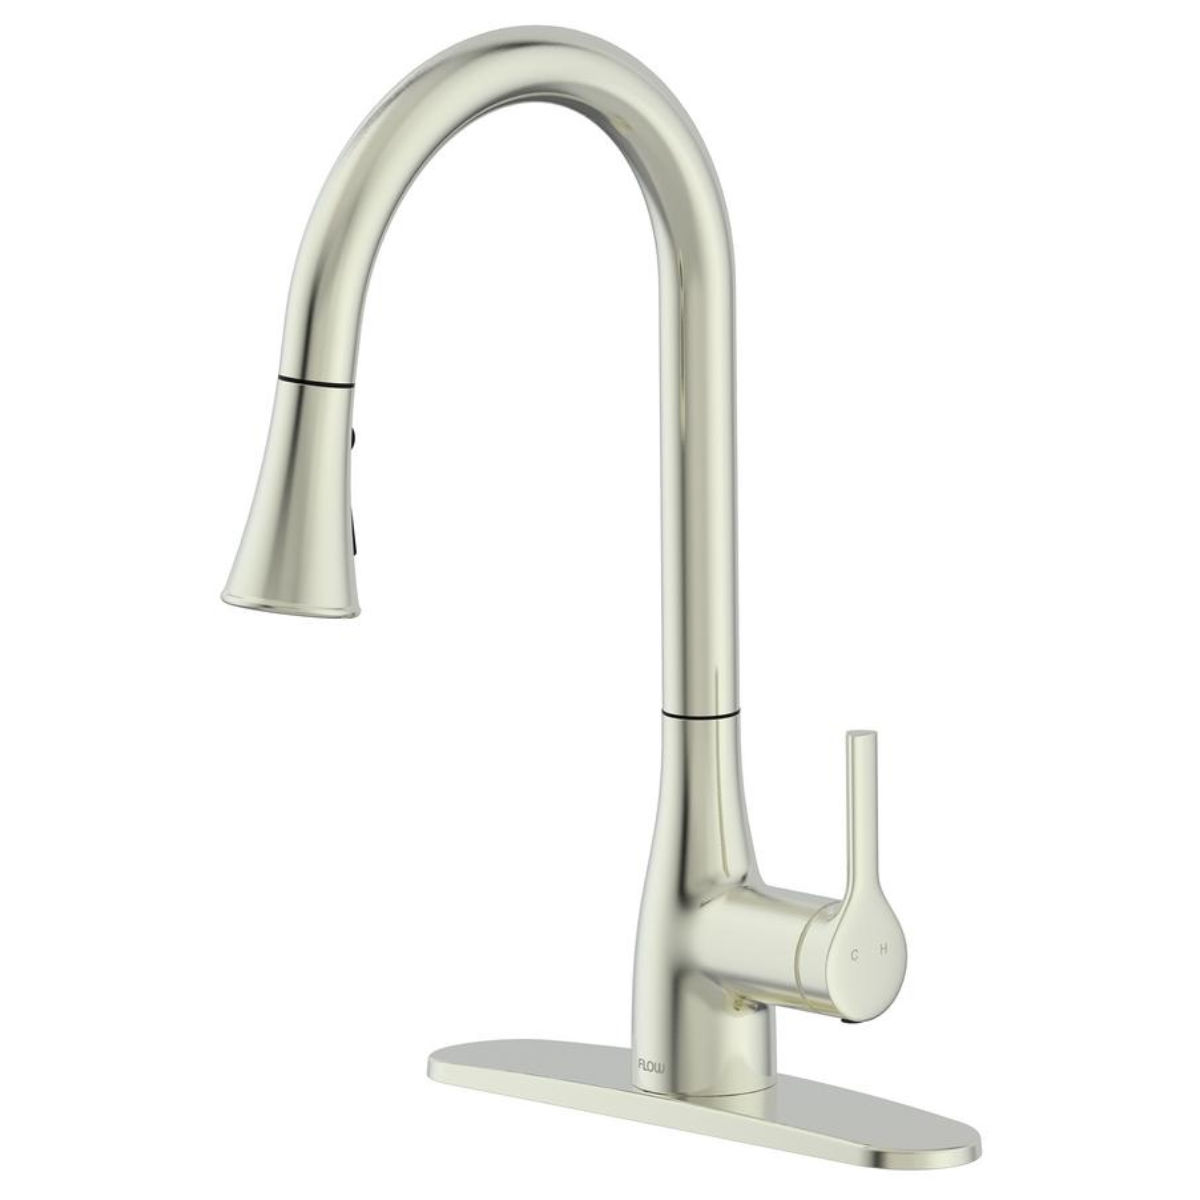 FLOW Classic Series Single Handle Standard Kitchen Faucet 